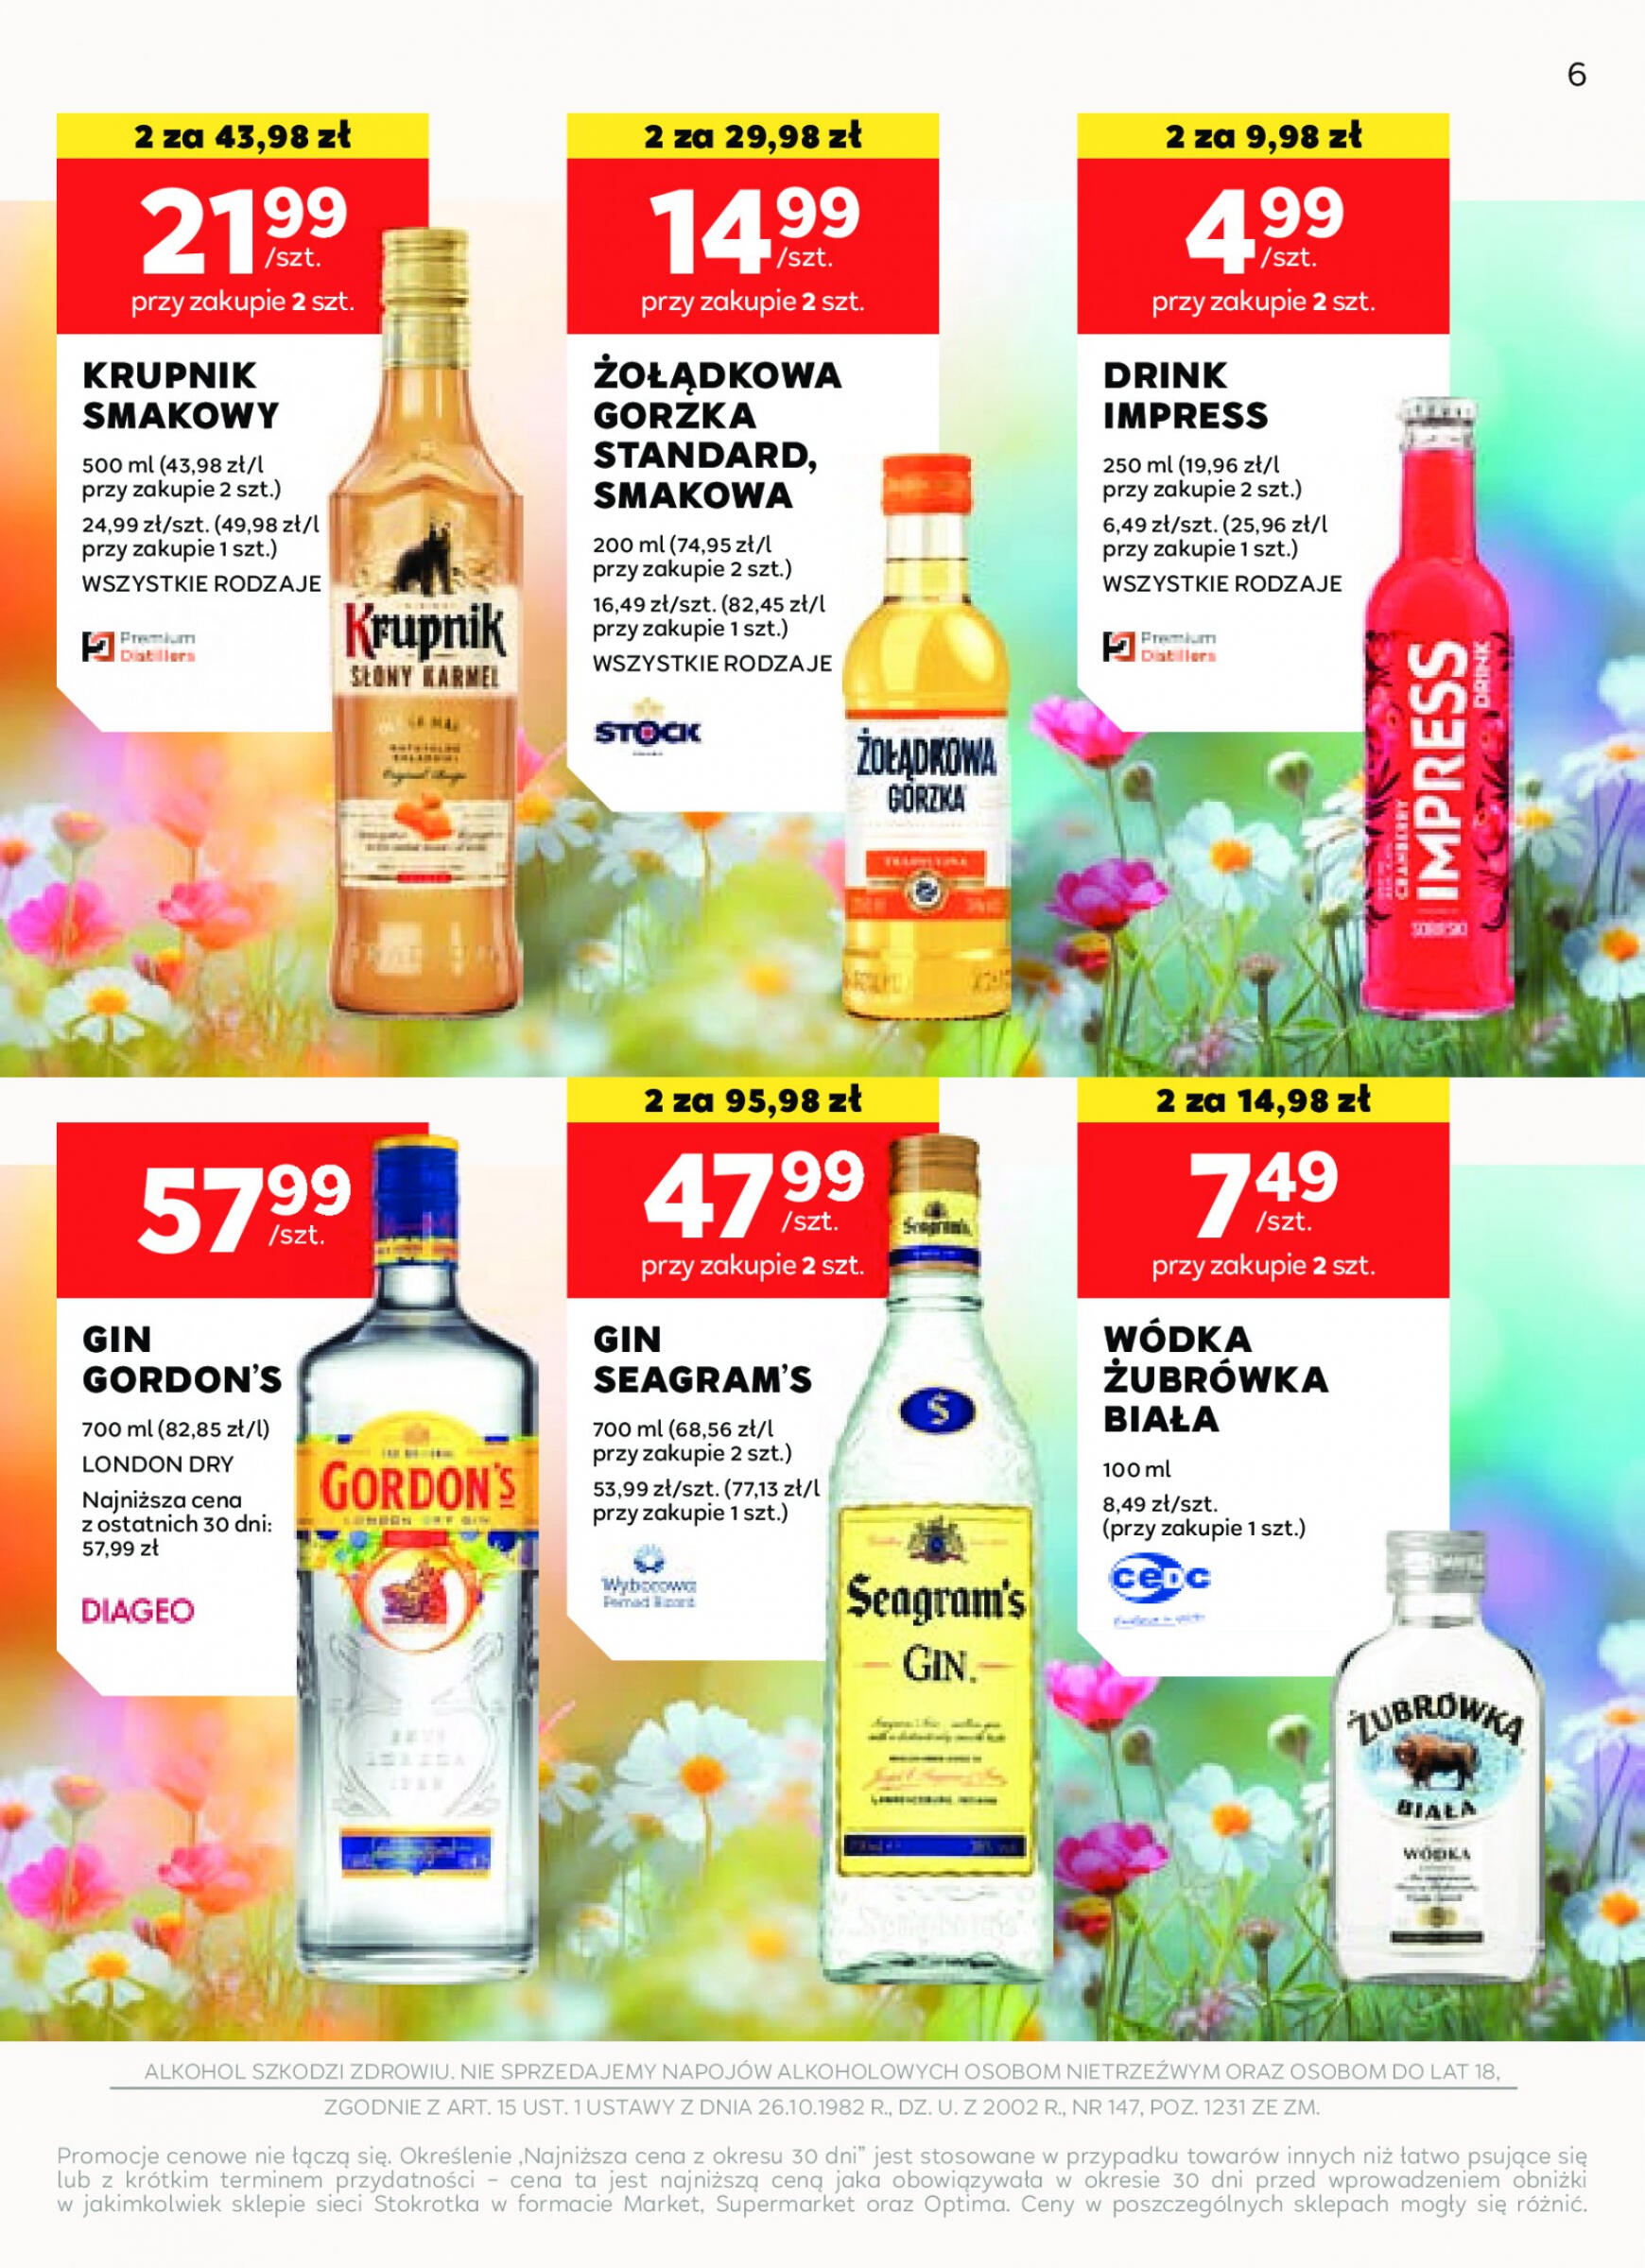 stokrotka - Stokrotka Supermarket - Oferta alkoholowa gazetka aktualna ważna od 25.04. - 22.05. - page: 6